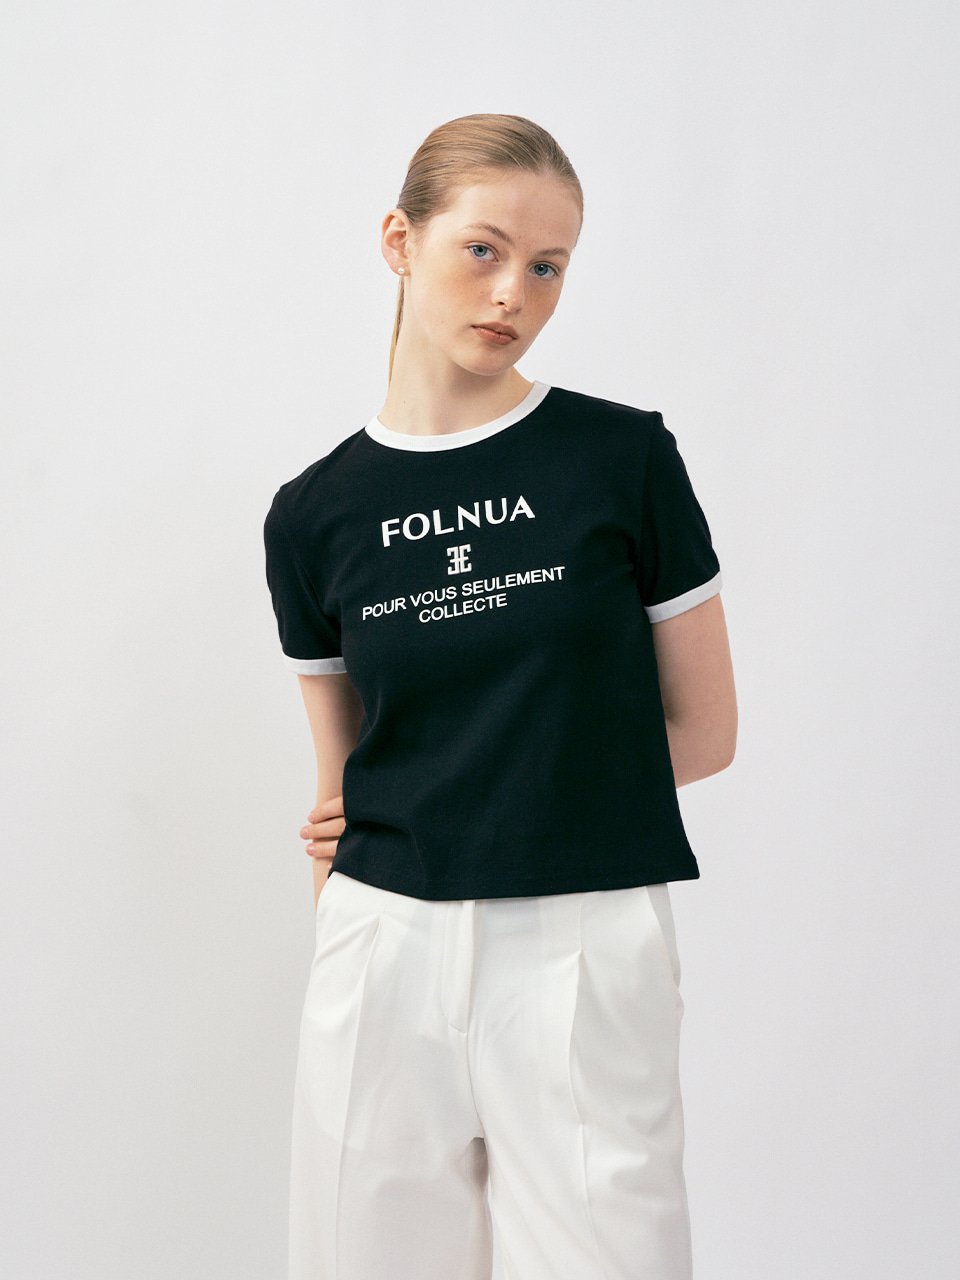 FOLNUA(フォルニュア) カラーレーションクラシックロゴTシャツ / ブラックホワイト